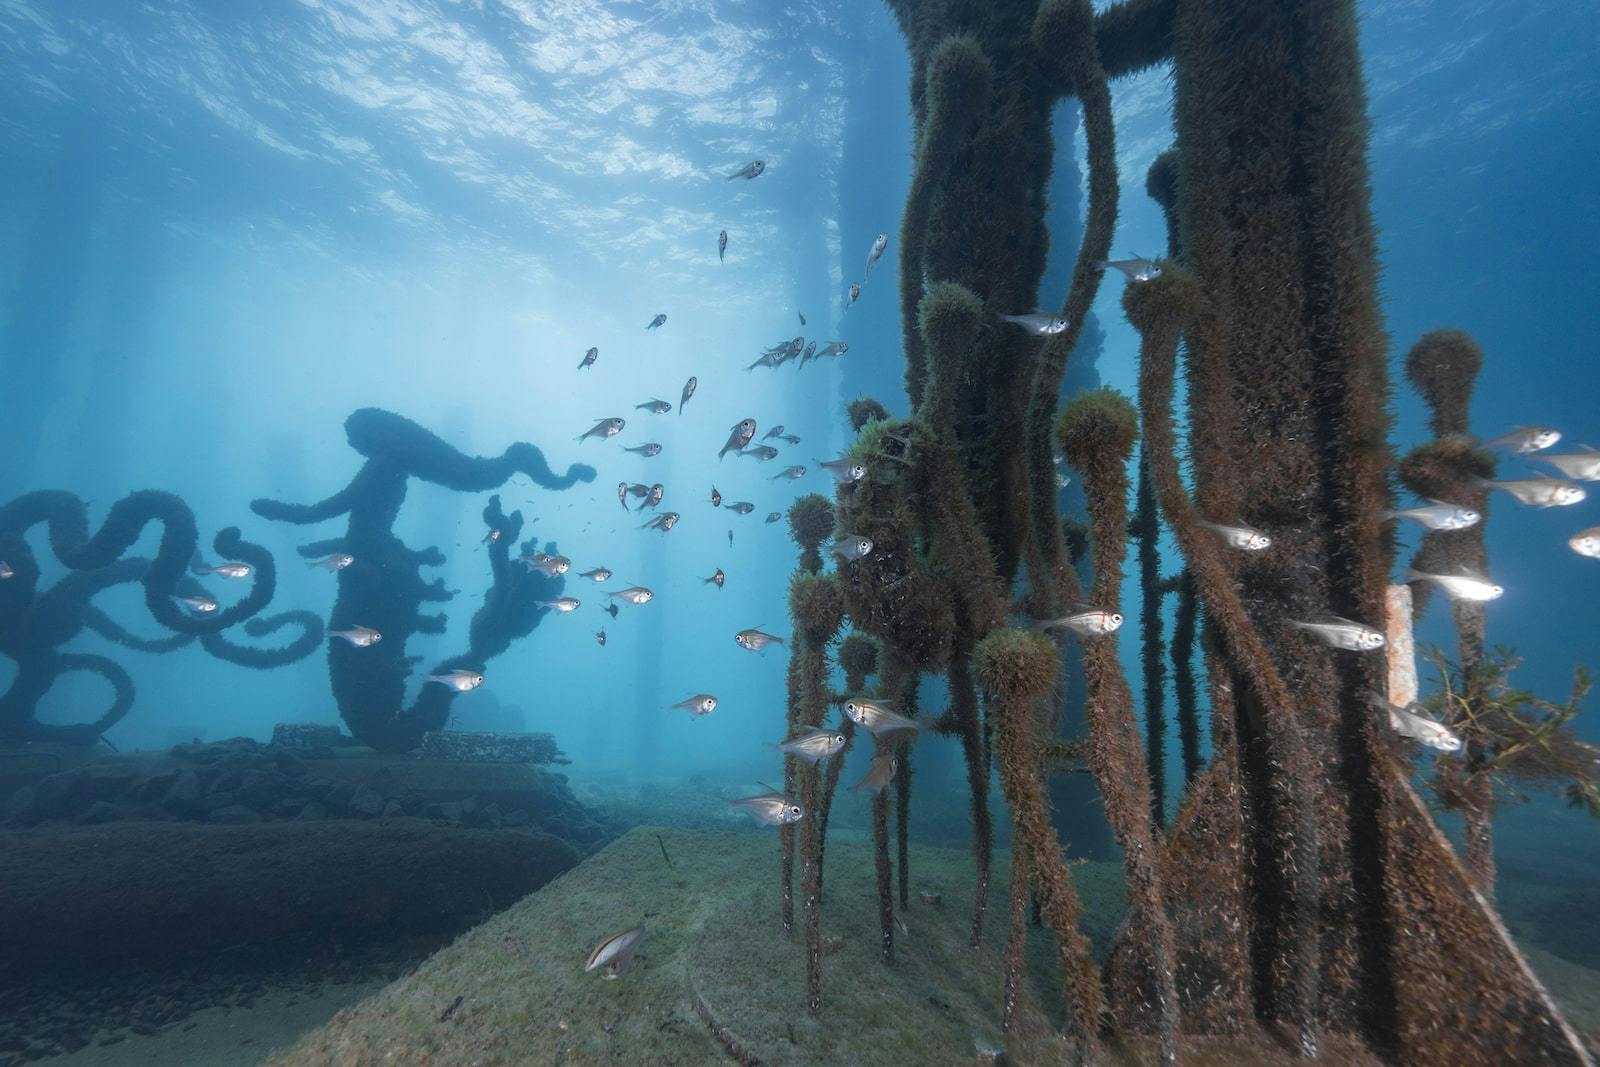 Busselton Jetty Underwater Sculptures